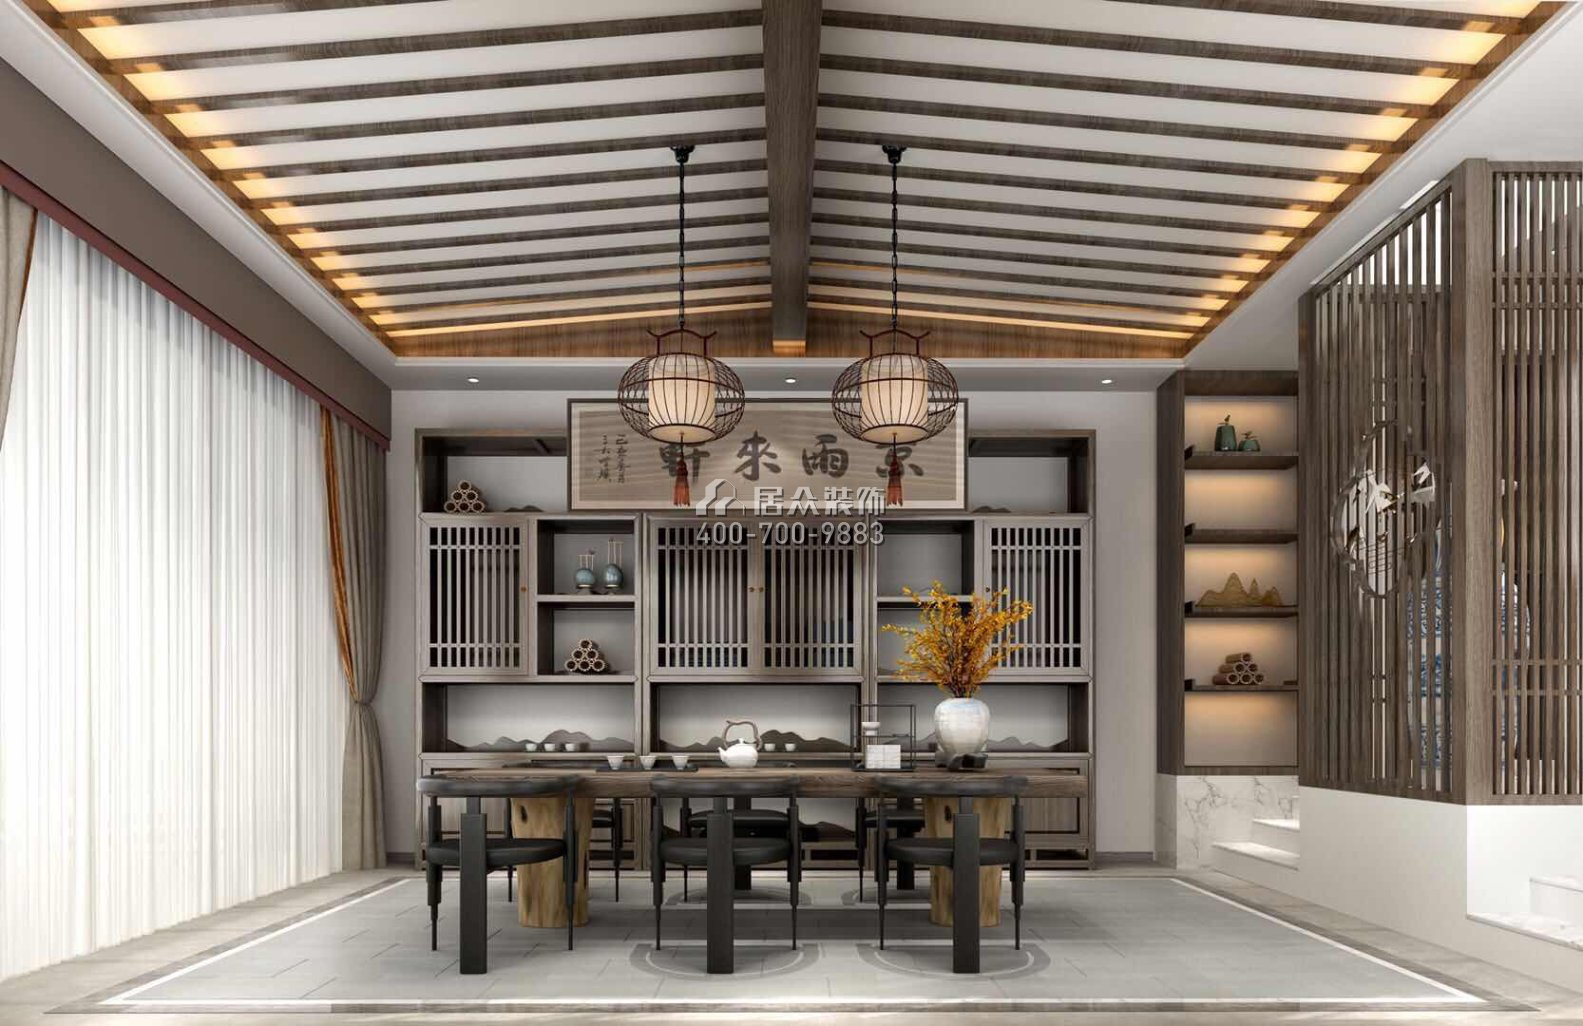 银湖山庄第三期227平方米中式风格别墅户型茶室装修效果图